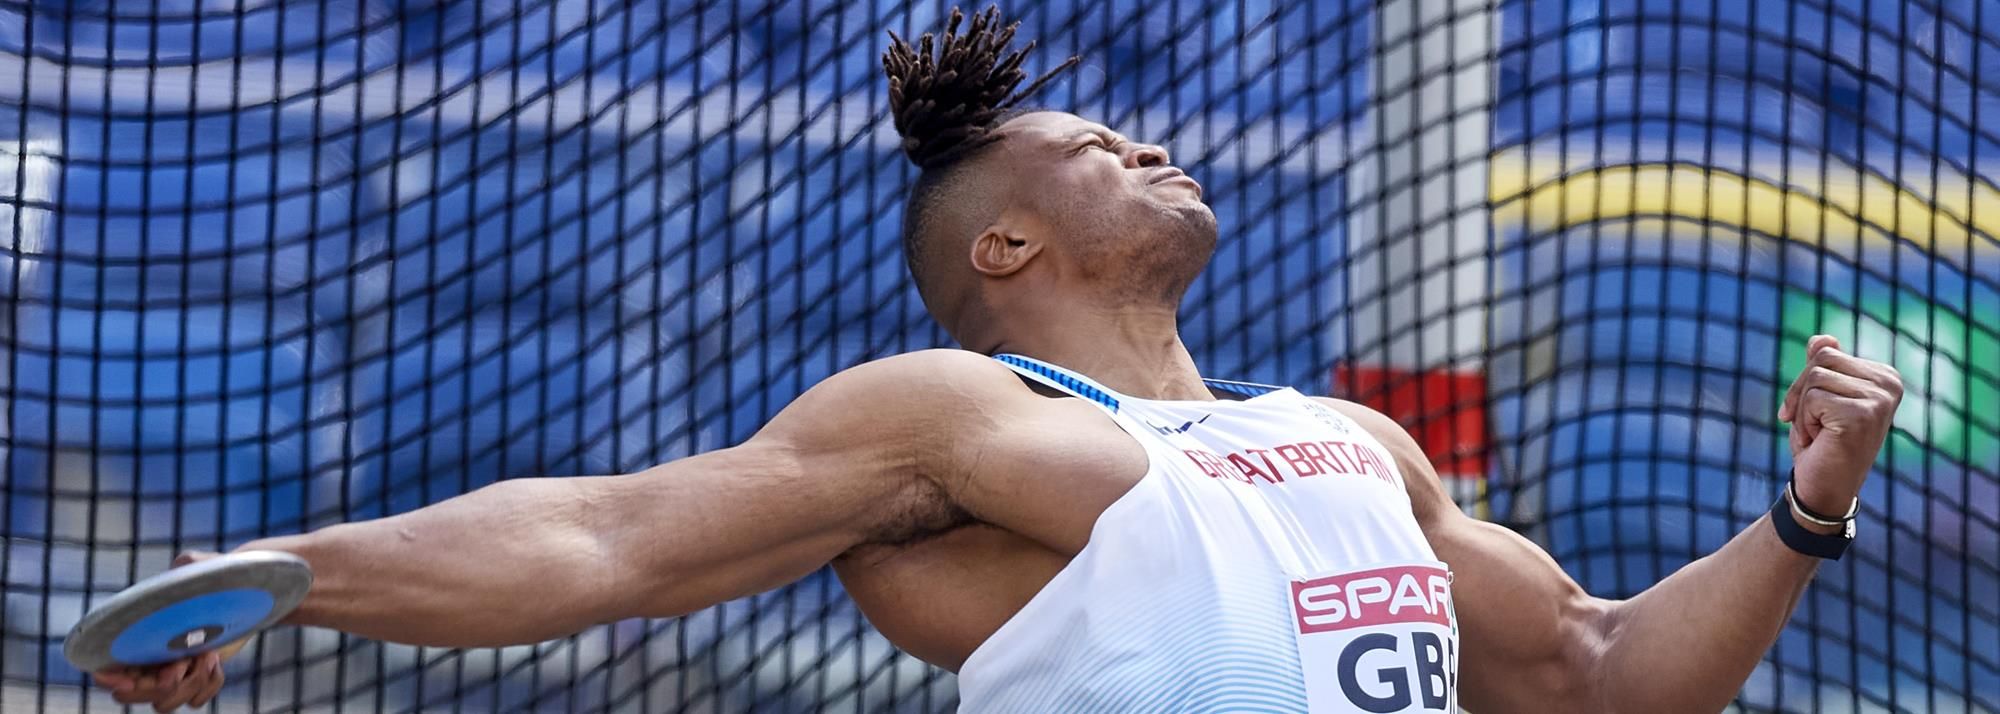 Lawrence OKOYE | Profile | World Athletics